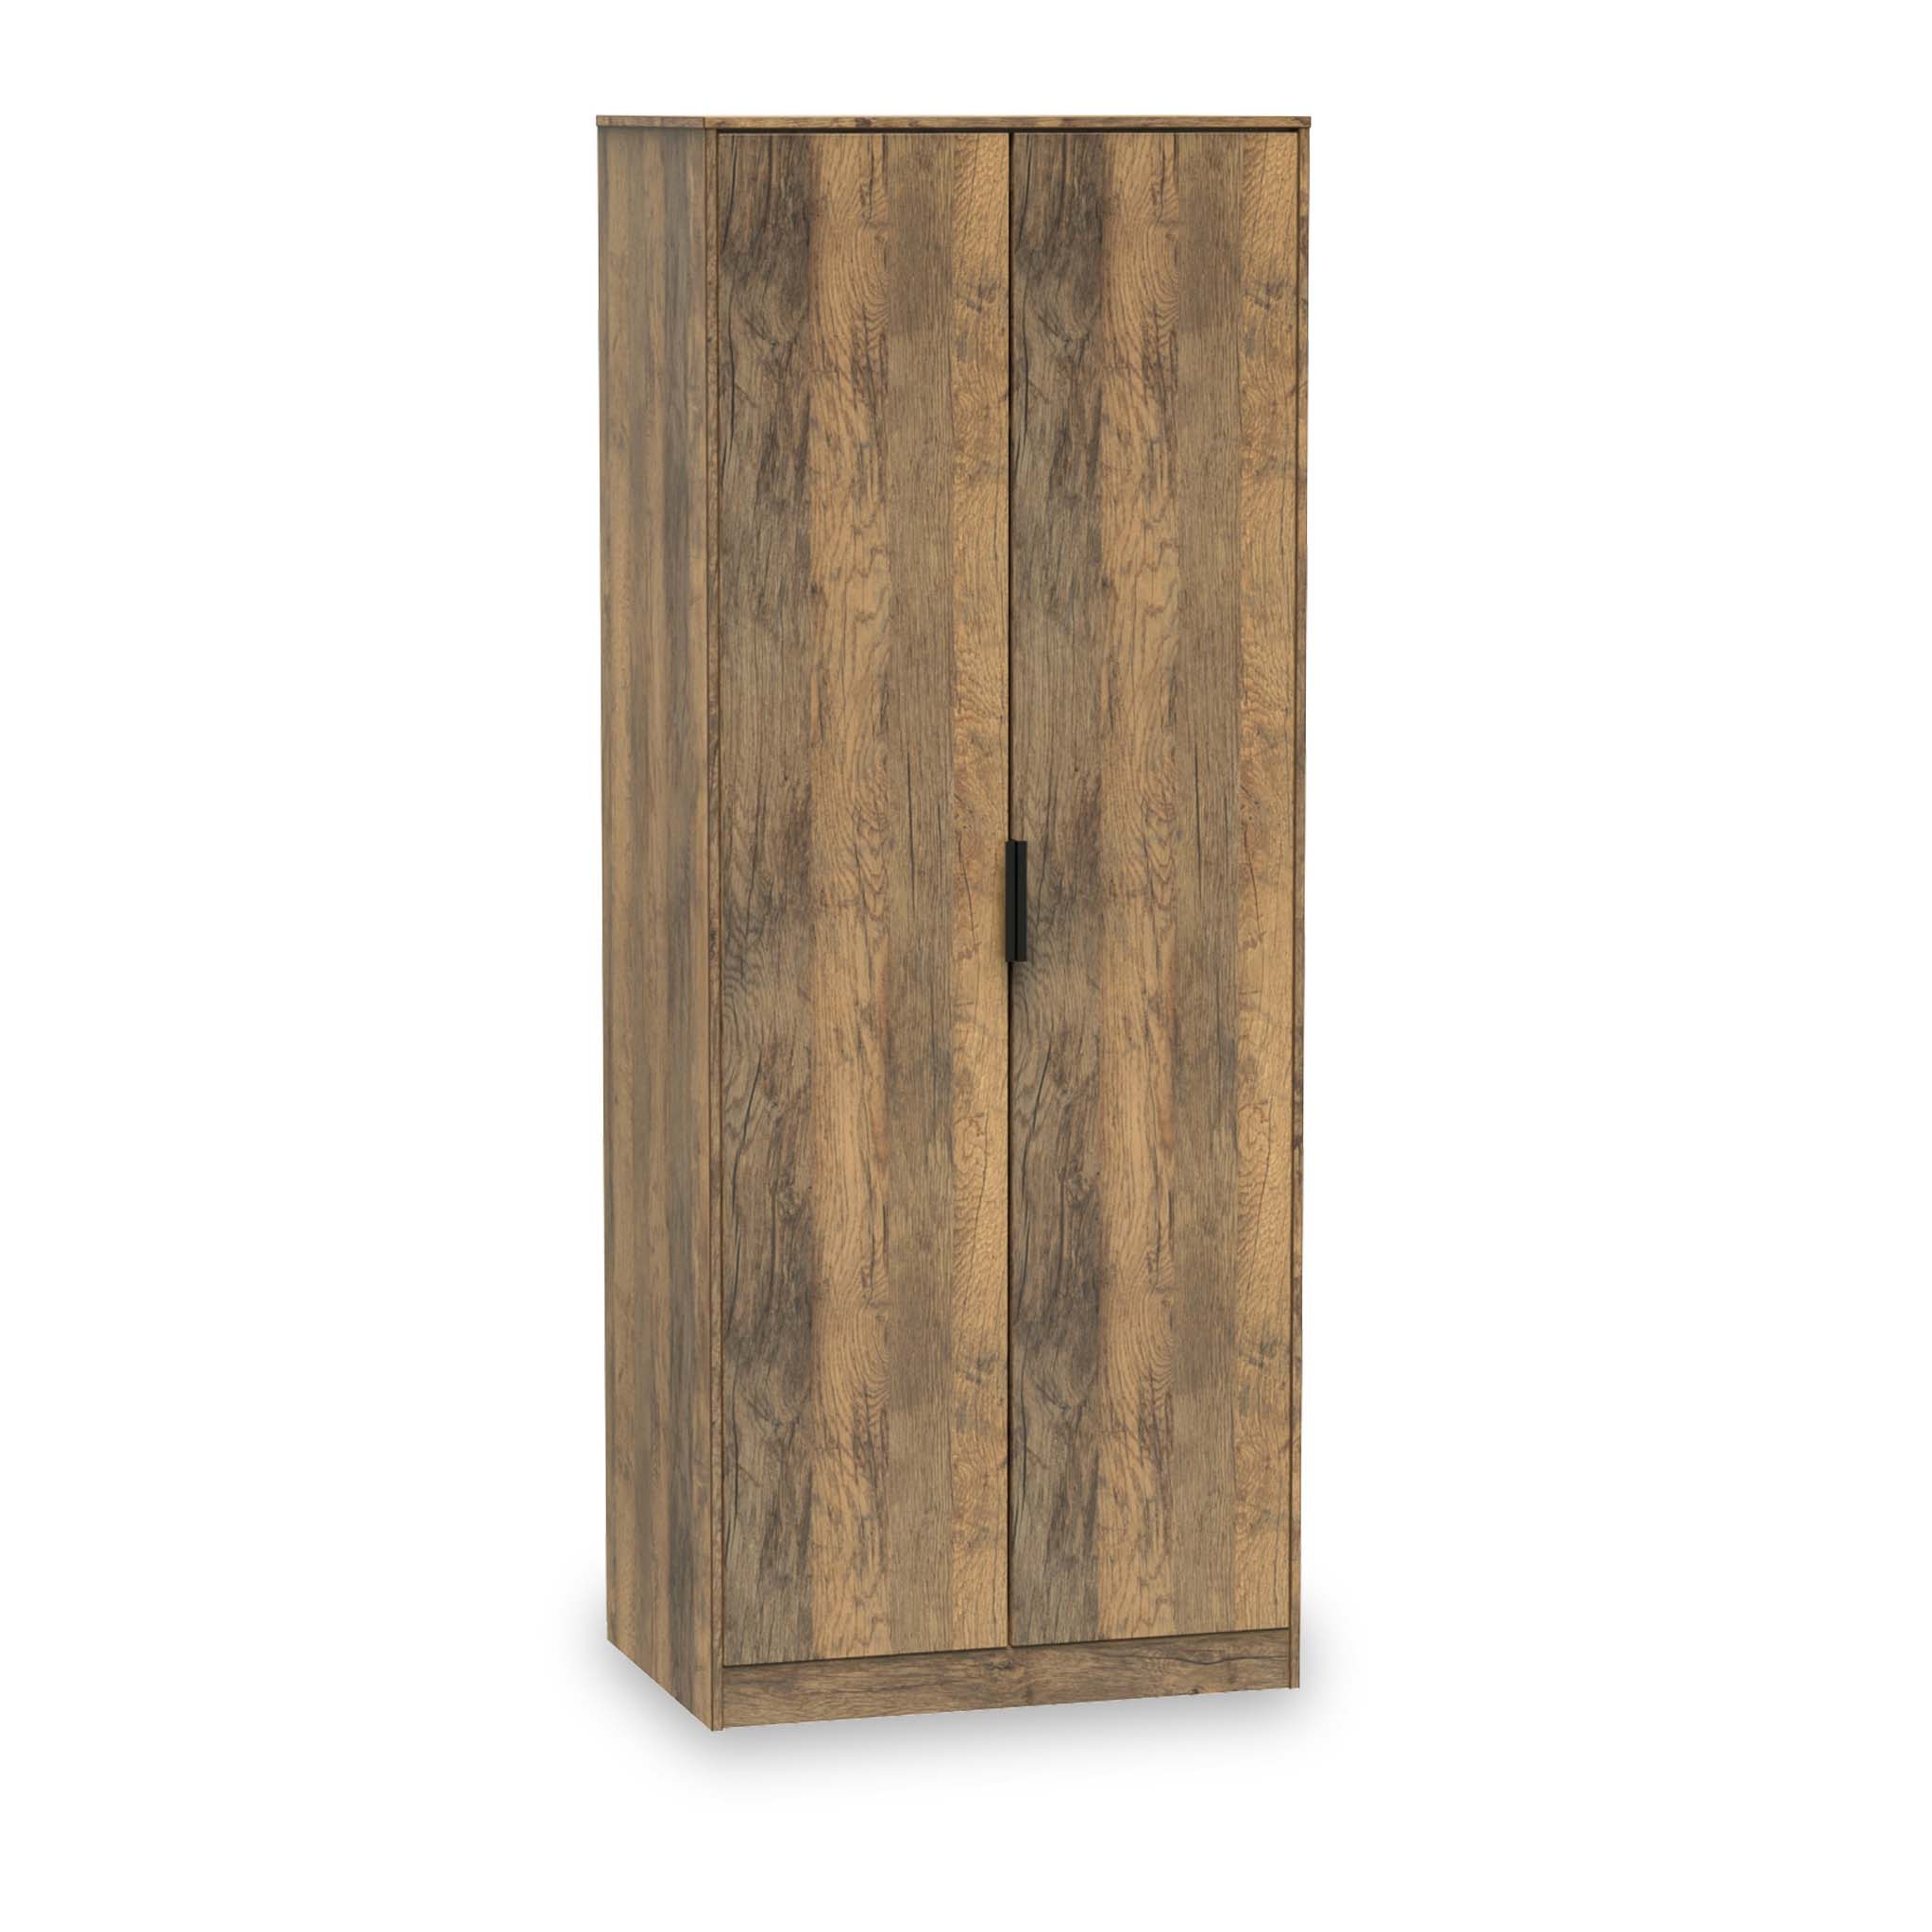 Moreno Rustic Oak Wooden 2 Door Double Wardrobe With Shelf Roseland